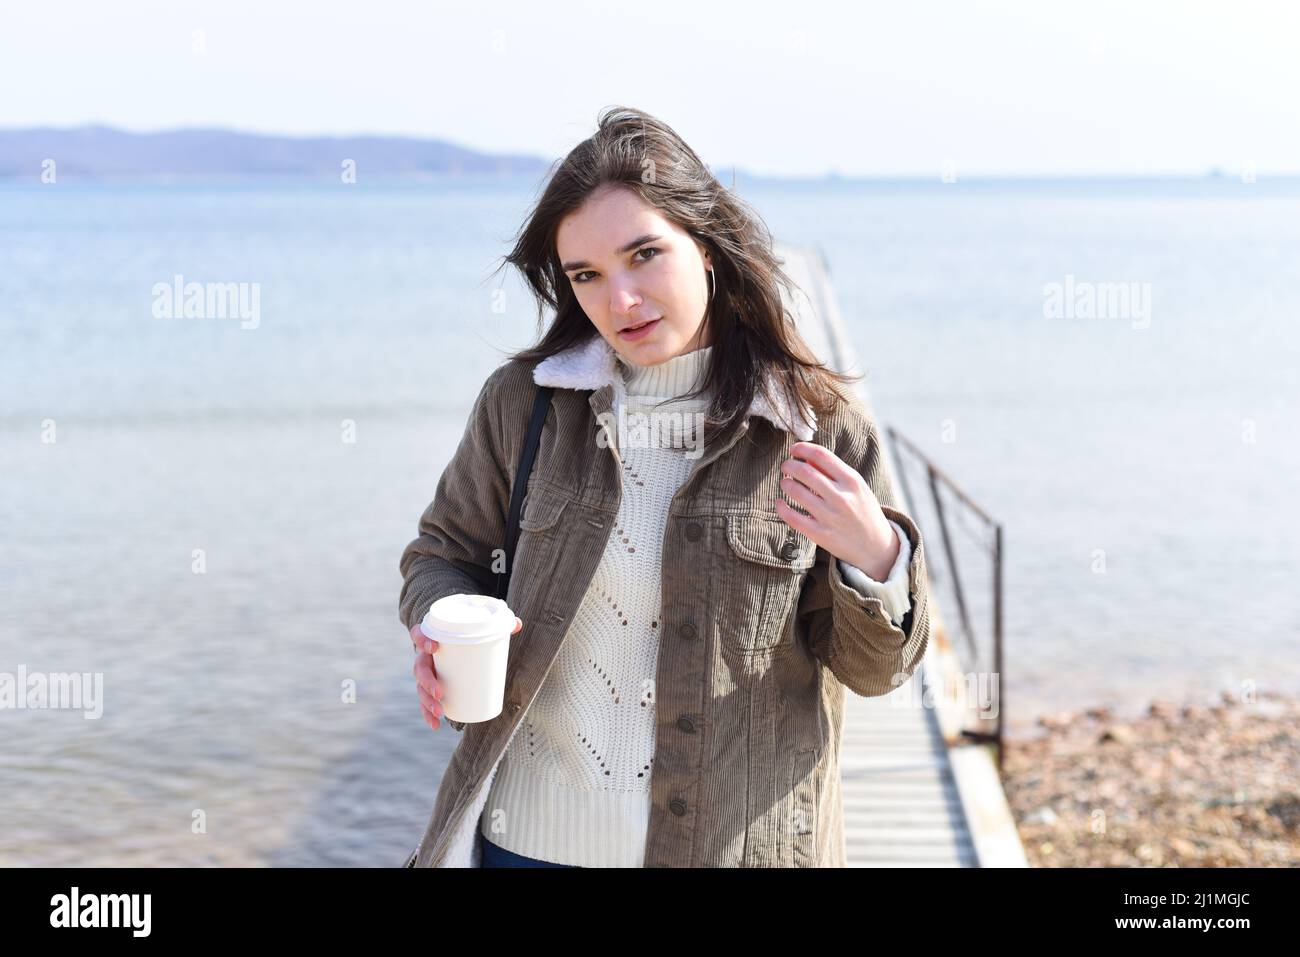 Au printemps, une jeune femme russe boit du café contre la mer japonaise Banque D'Images